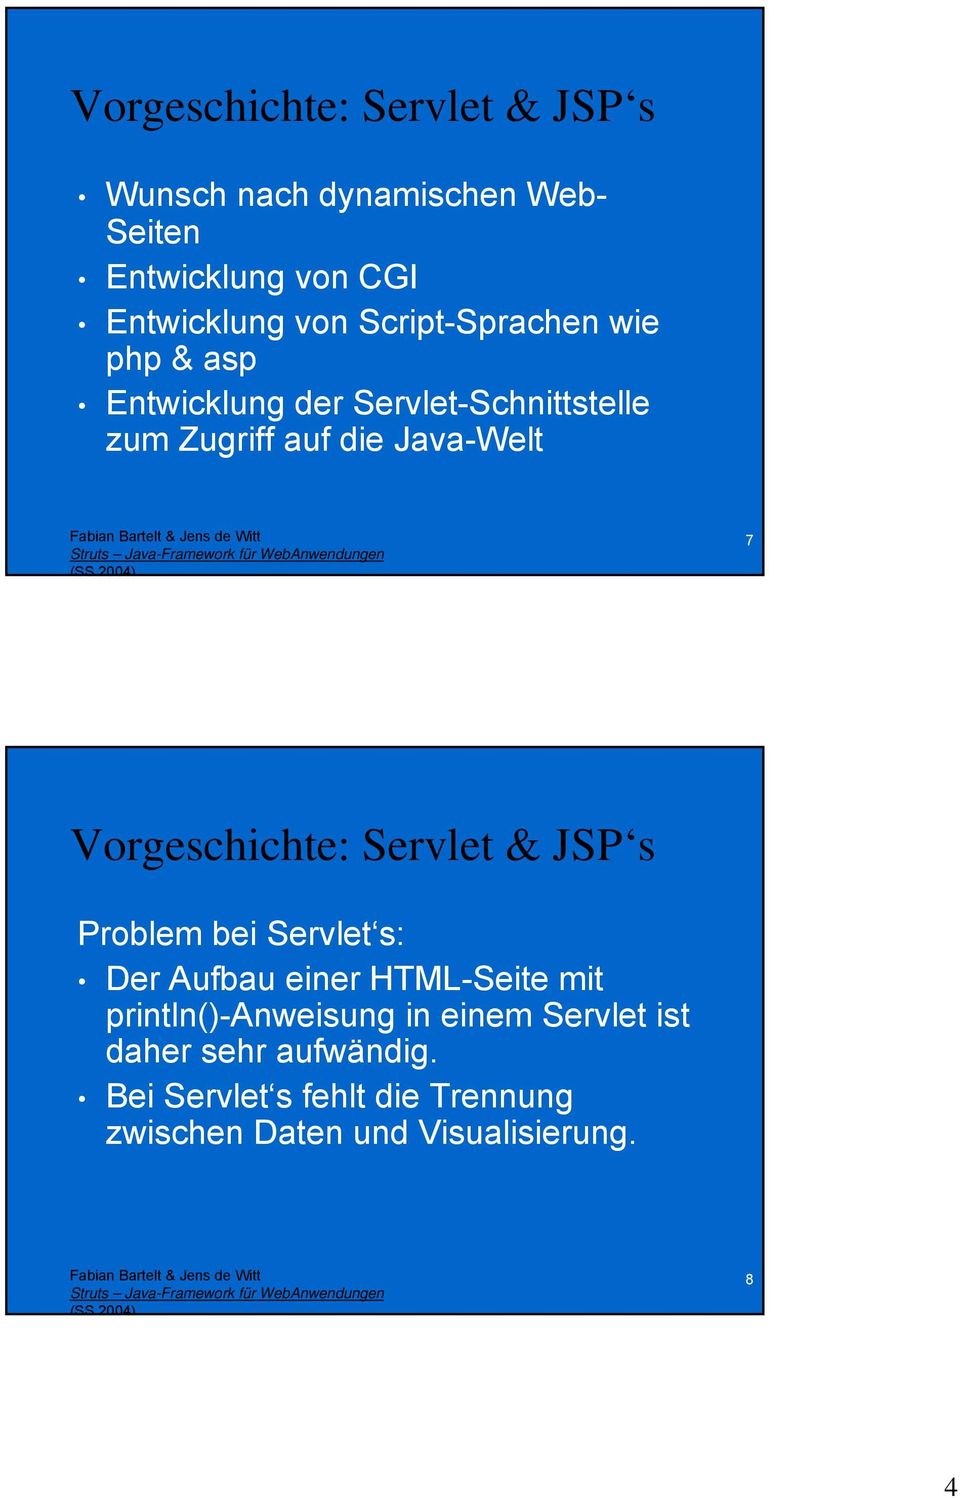 Vorgeschichte: Servlet & JSP s Problem bei Servlet s: Der Aufbau einer HTML-Seite mit println()-anweisung